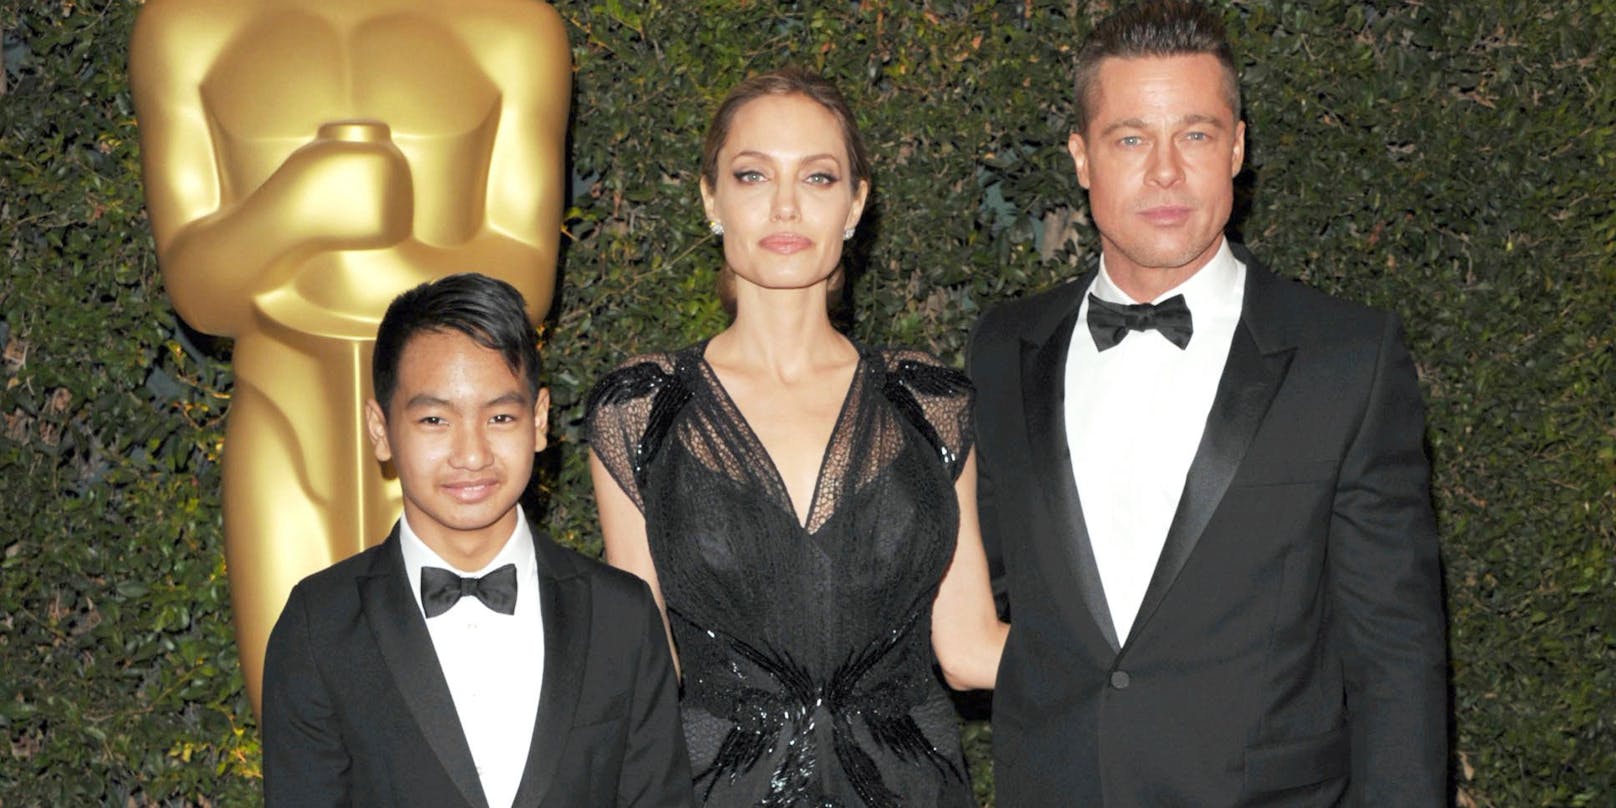 Damals noch eine glückliche Familie: Maddox, Angelina Jolie und Brad Pitt im Jahr 2013 auf dem Roten Teppich.